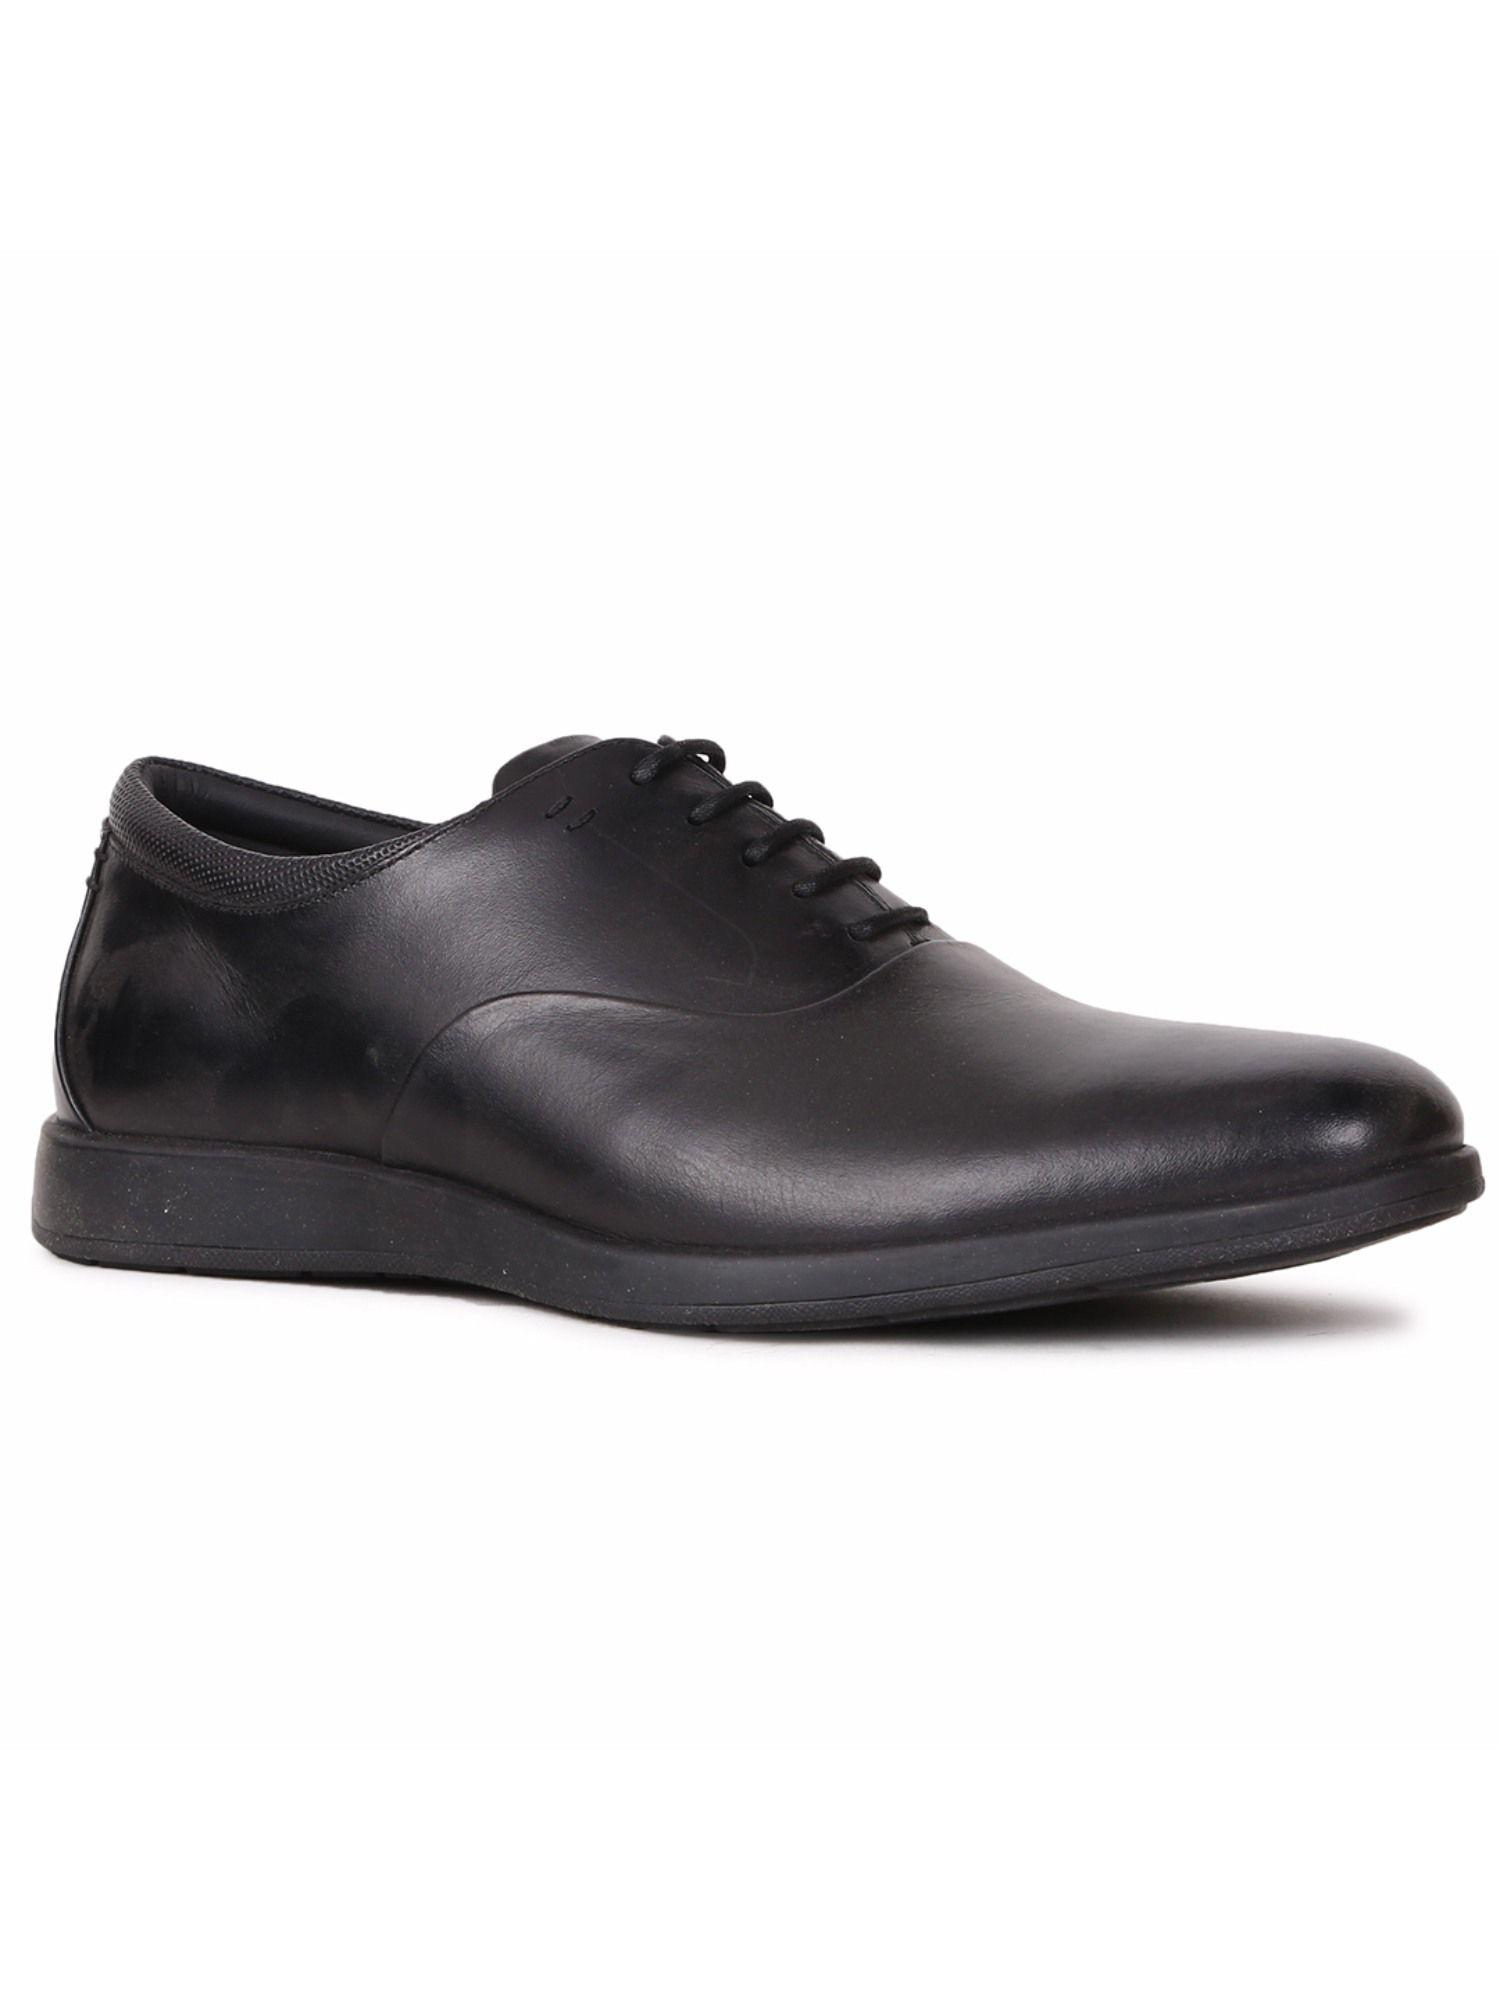 men-black-lace-ups-formal-shoes